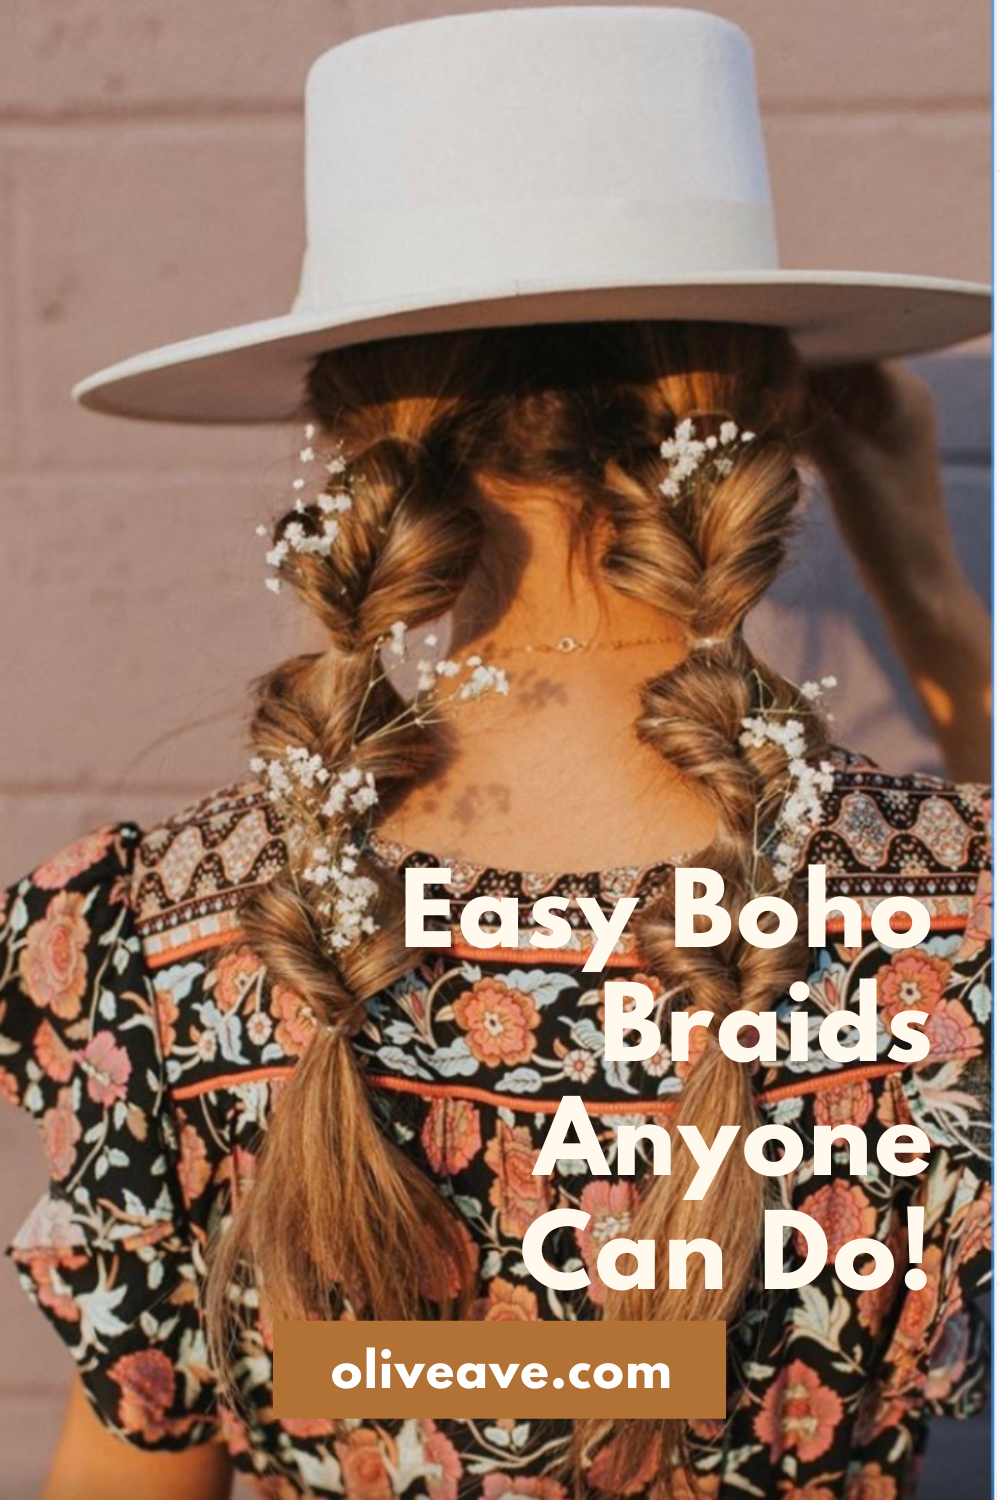 Easy Boho Braids Anyone Can Do! www.oliveave.com/blogs